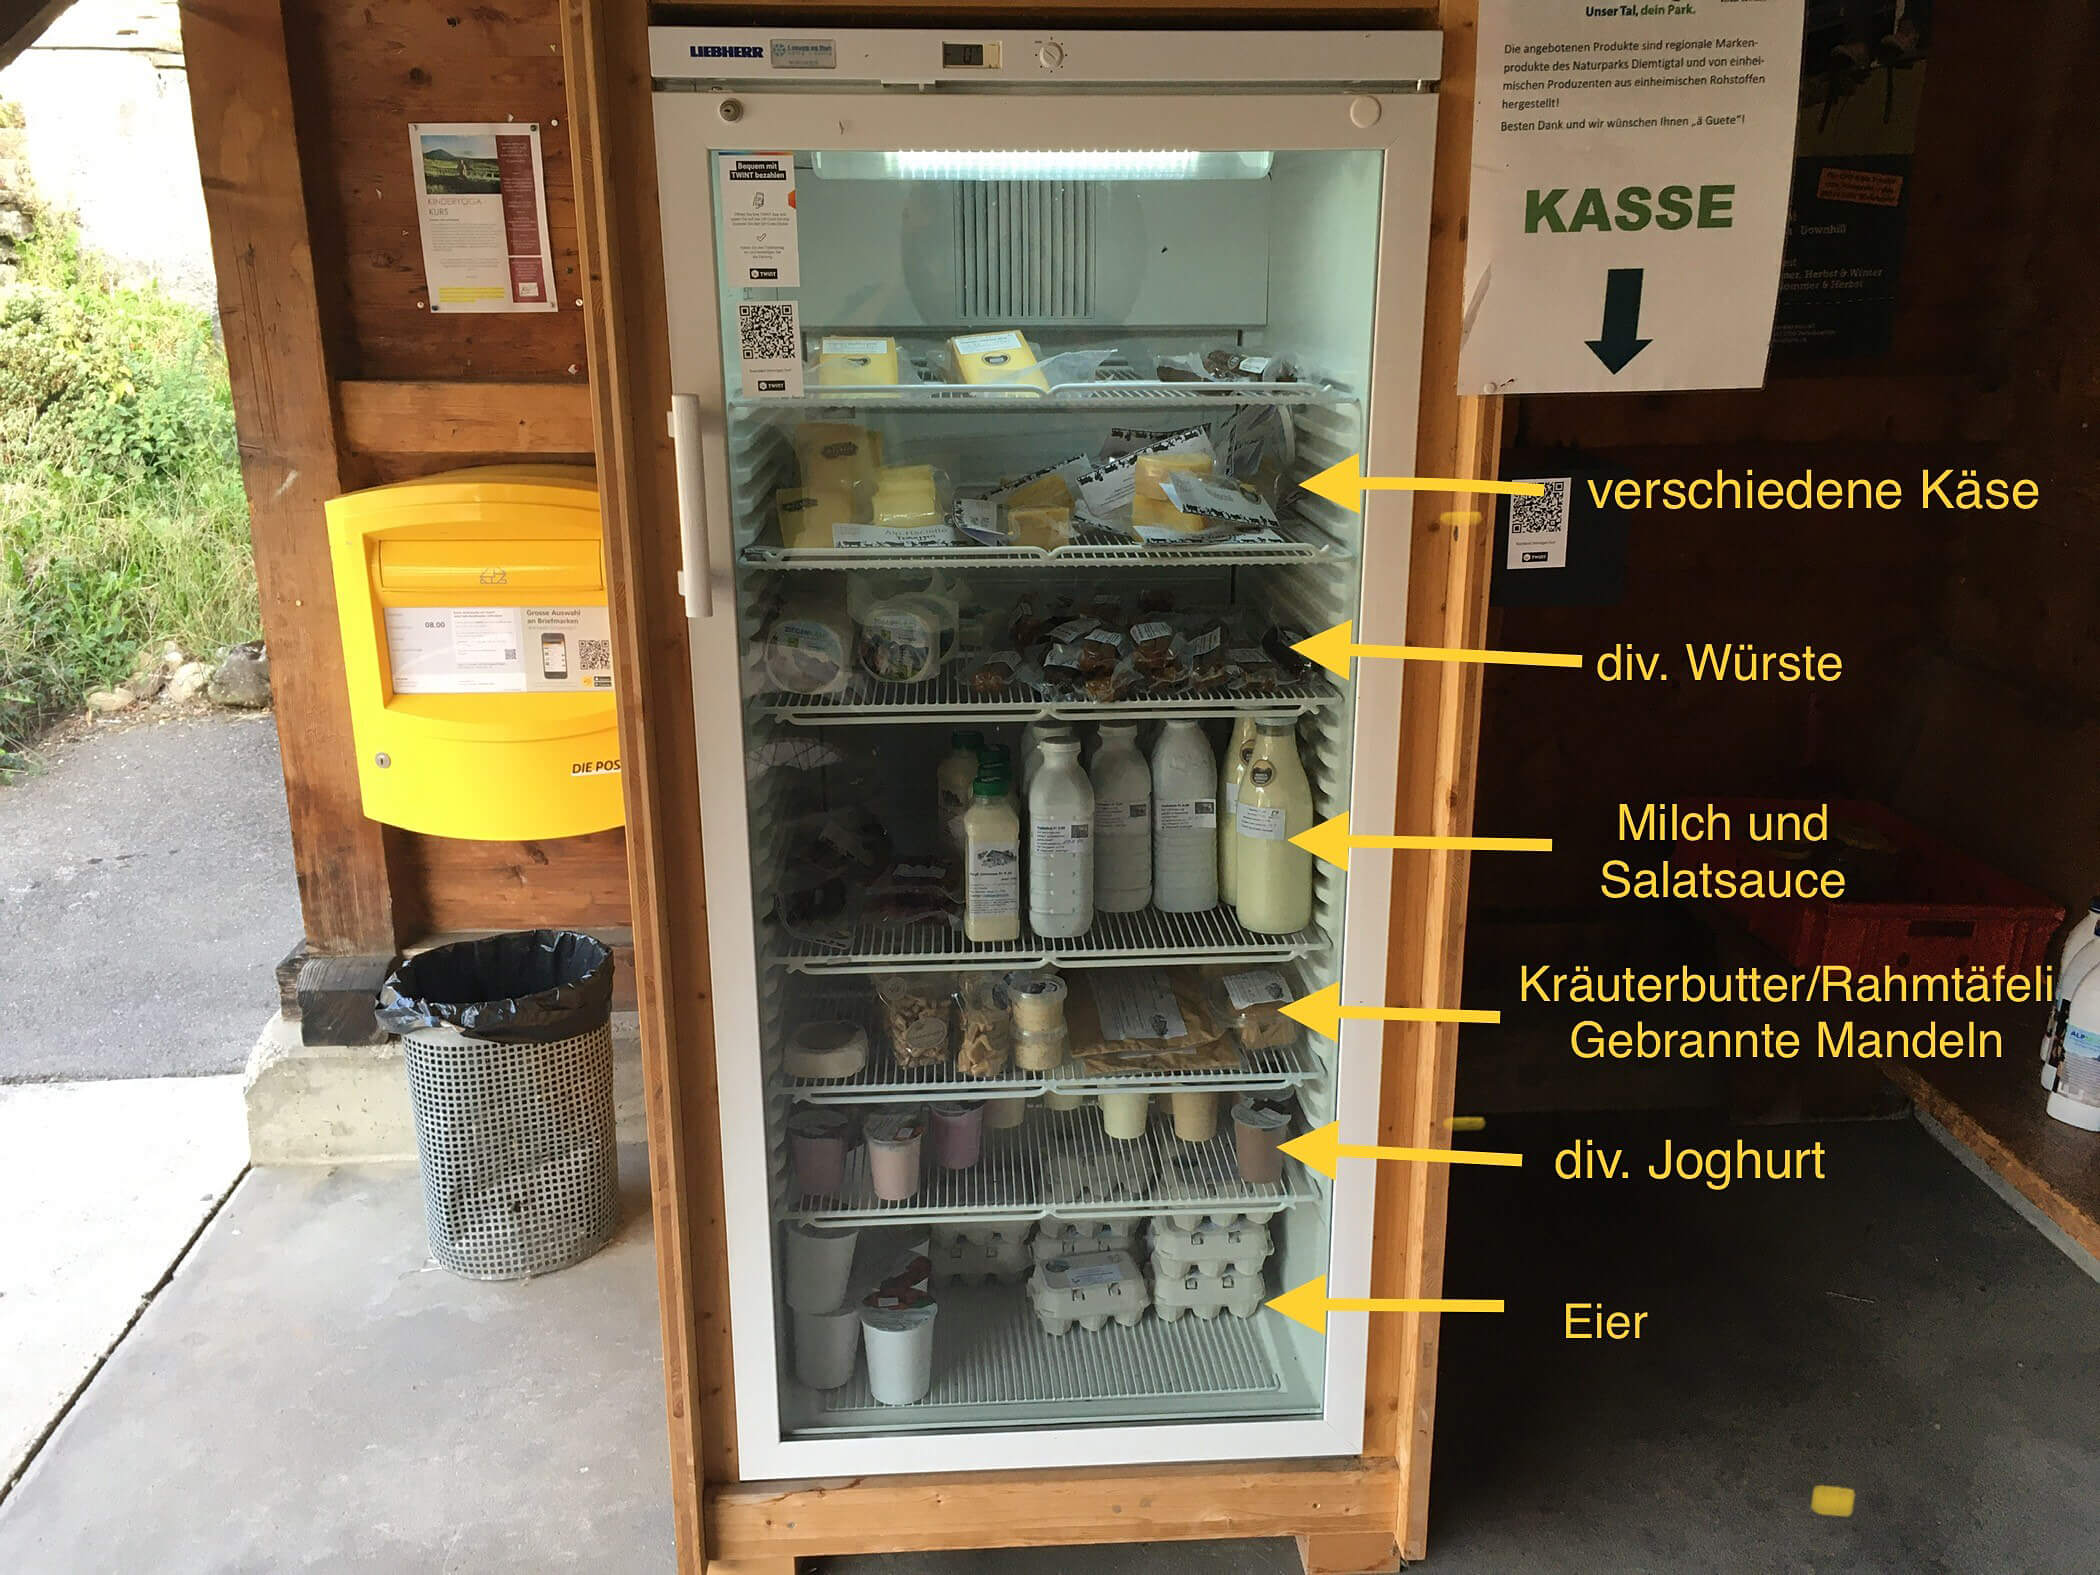 Product refrigerator in the village of Diemtigen 